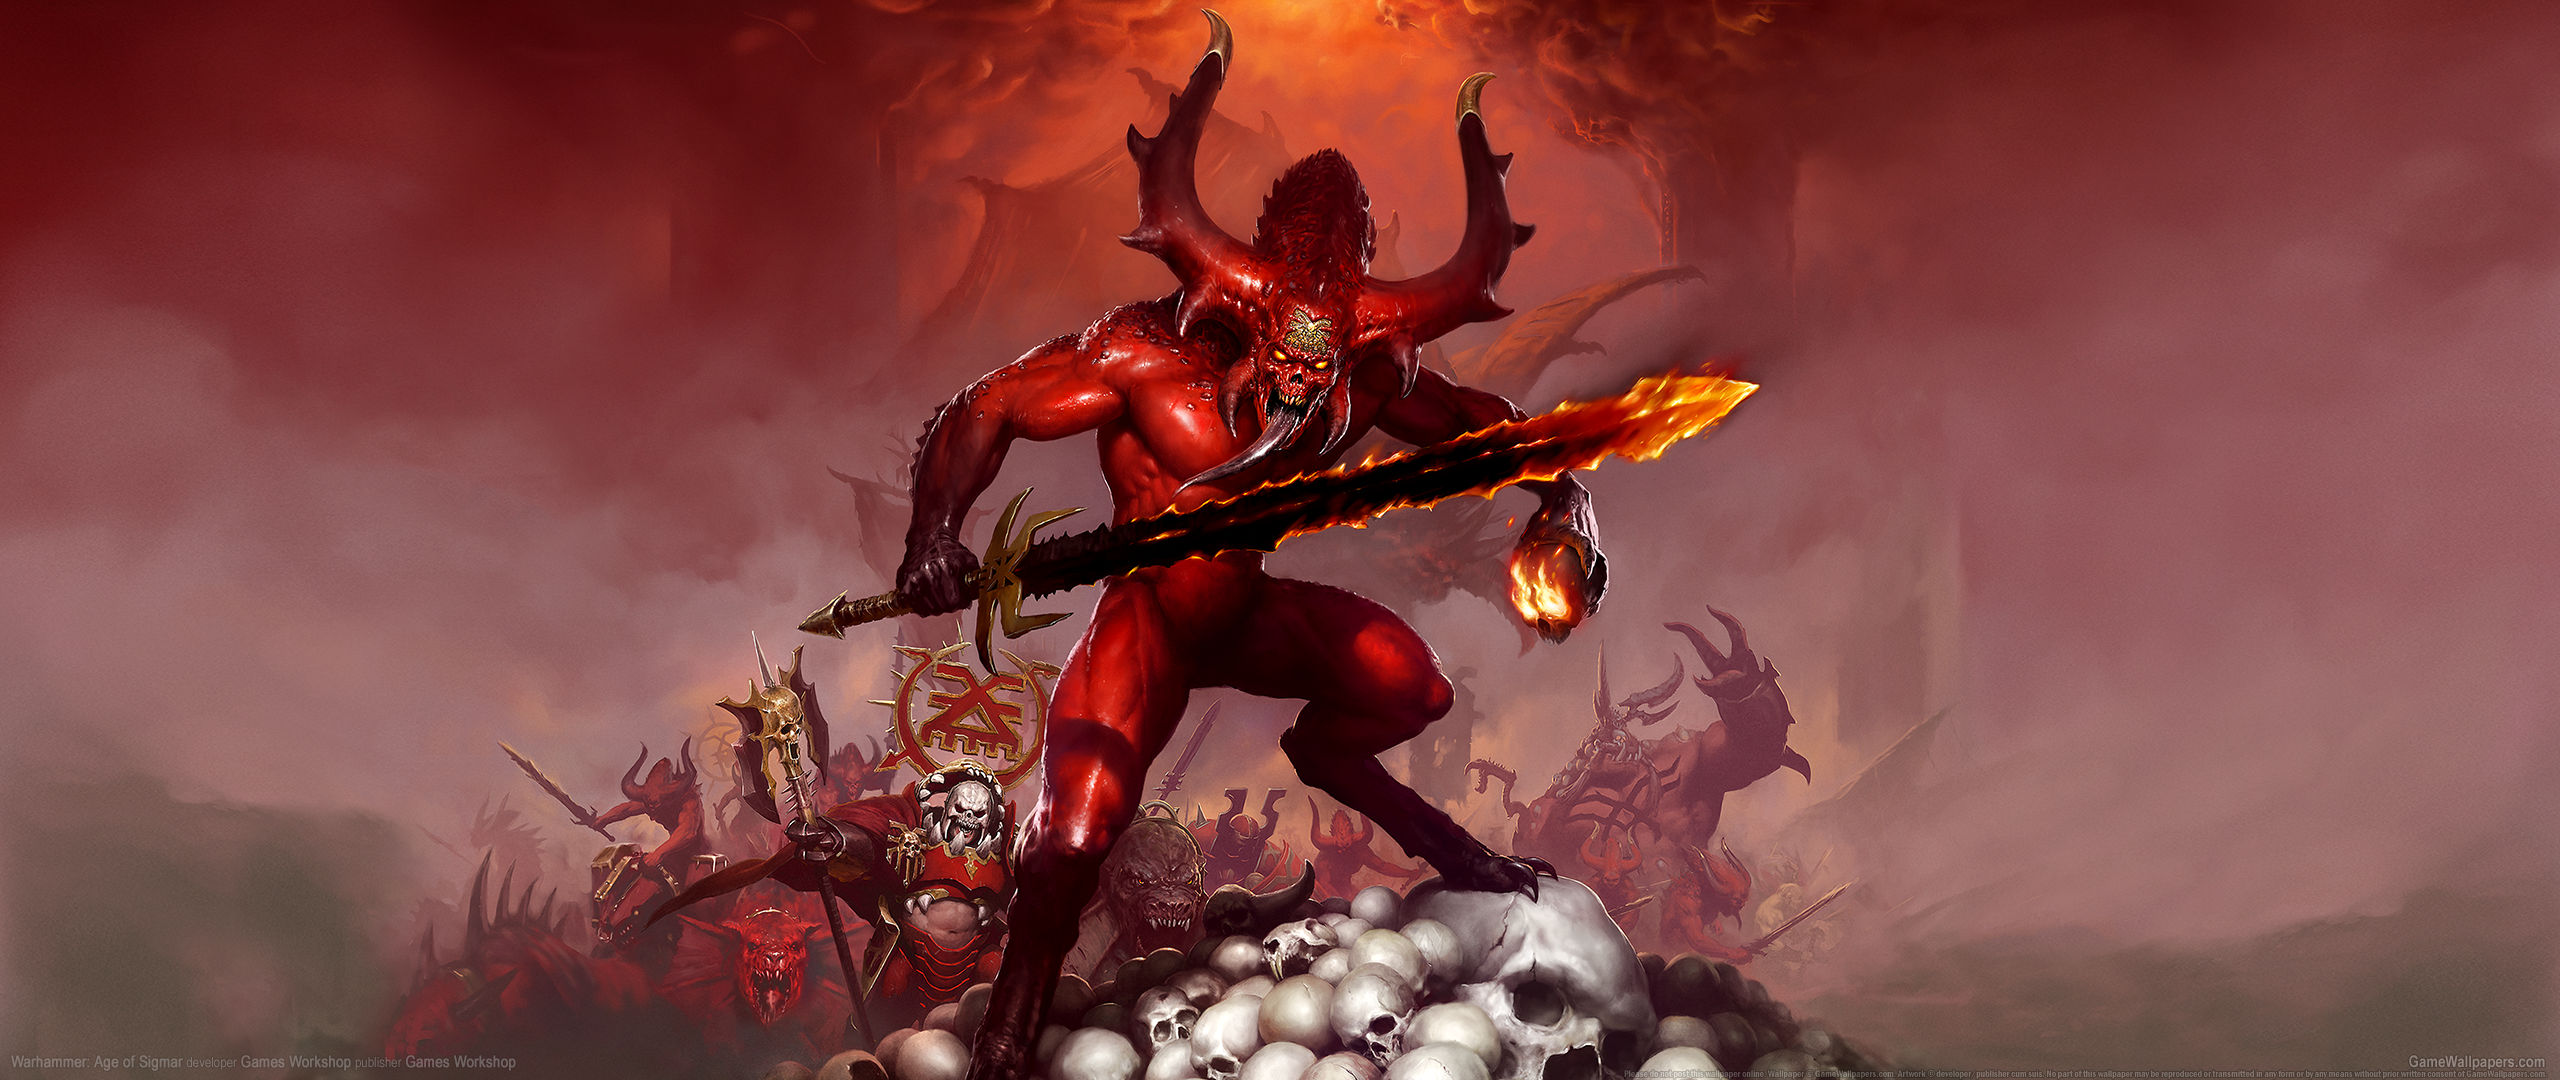 Warhammer: Age of Sigmar 2560x1080 fondo de escritorio 02